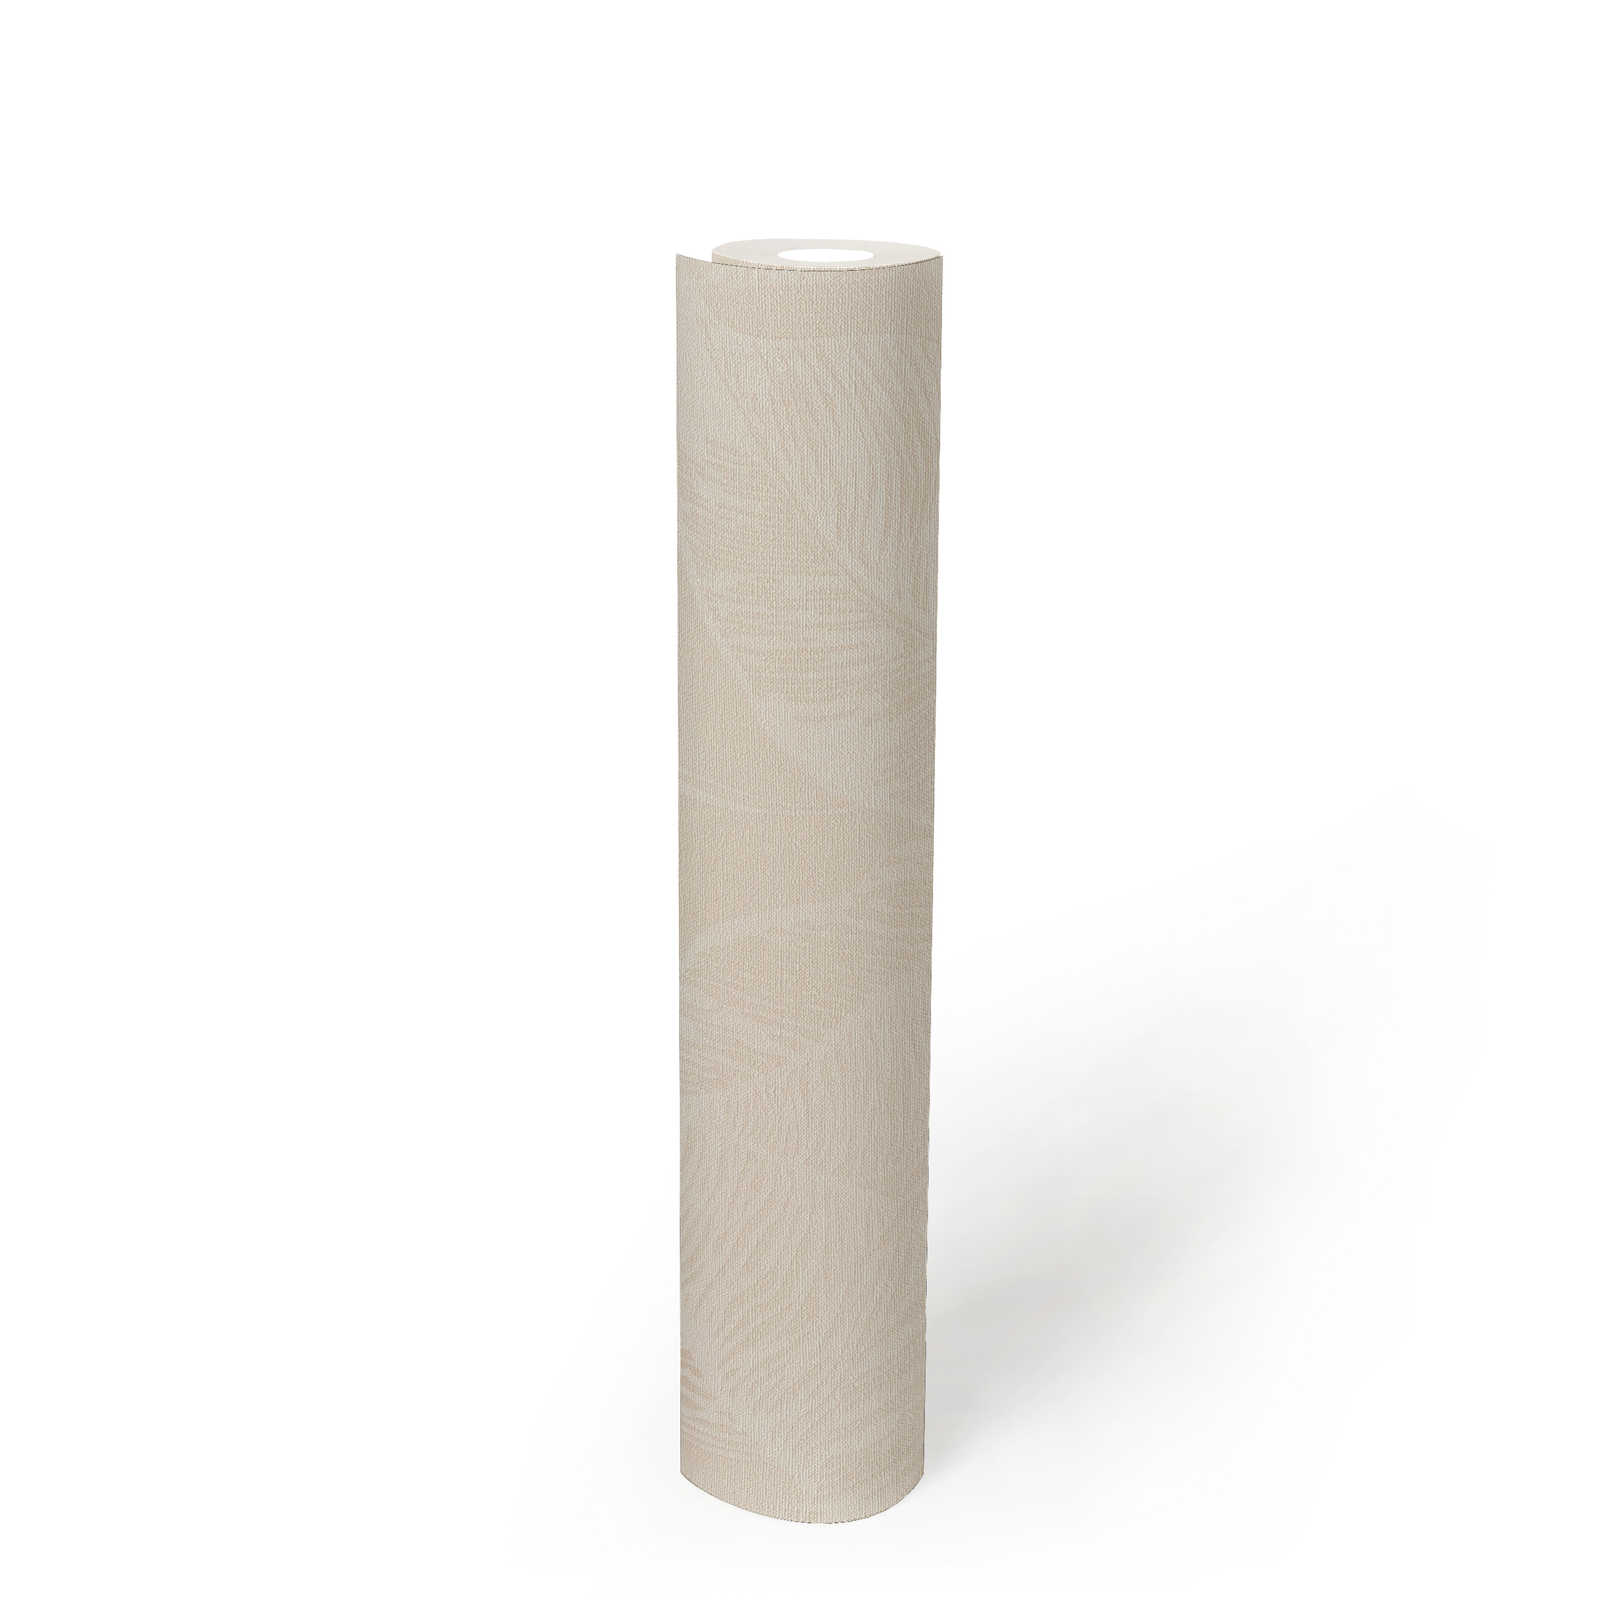             Bladpatroon vliesbehang PVC-vrij - beige, wit
        